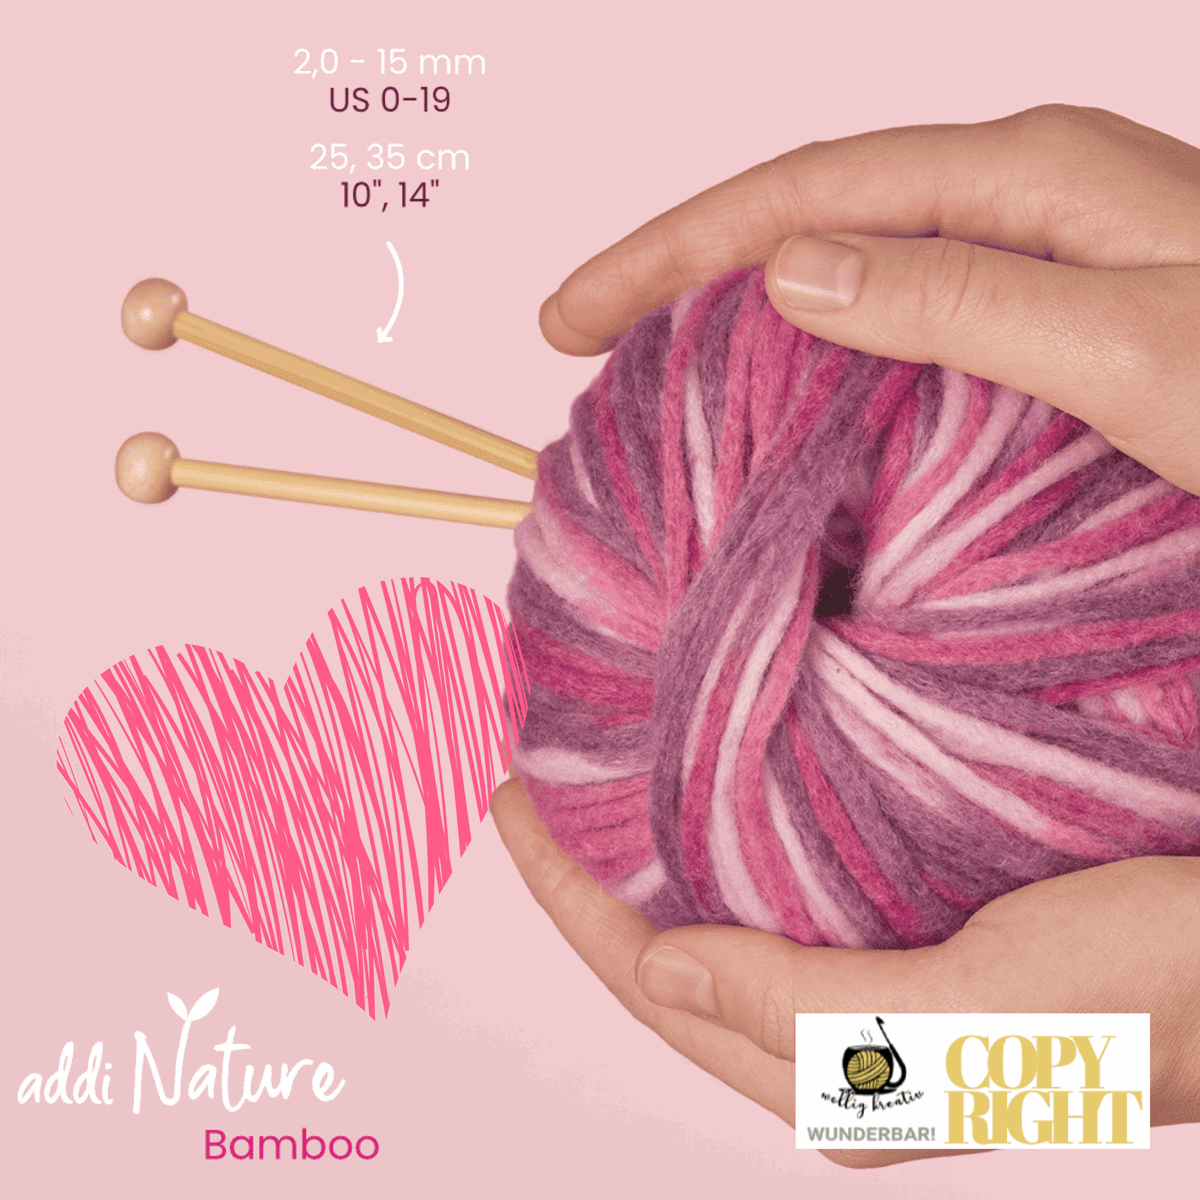 Addi, Nature Bamboo jacket knitting needle, 65007, size 5.5, length 35